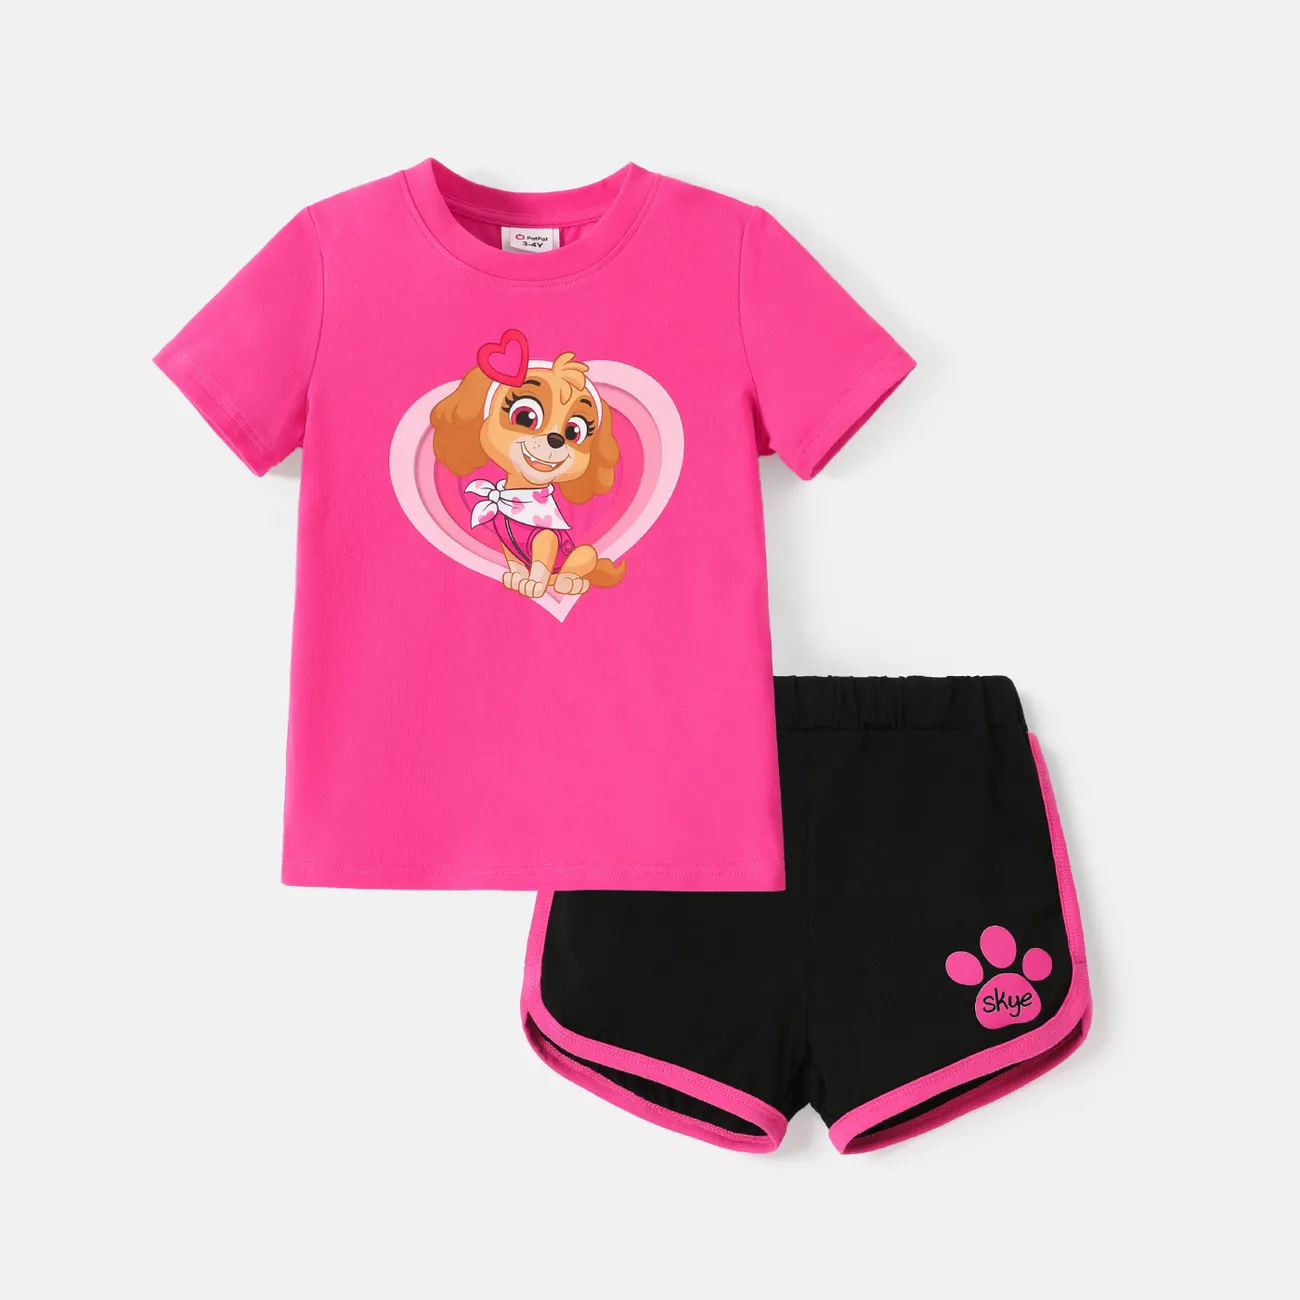 Patrulha Canina 2 unidades Criança Menina Costuras de tecido Infantil Cão conjuntos de camisetas Roseo big image 1